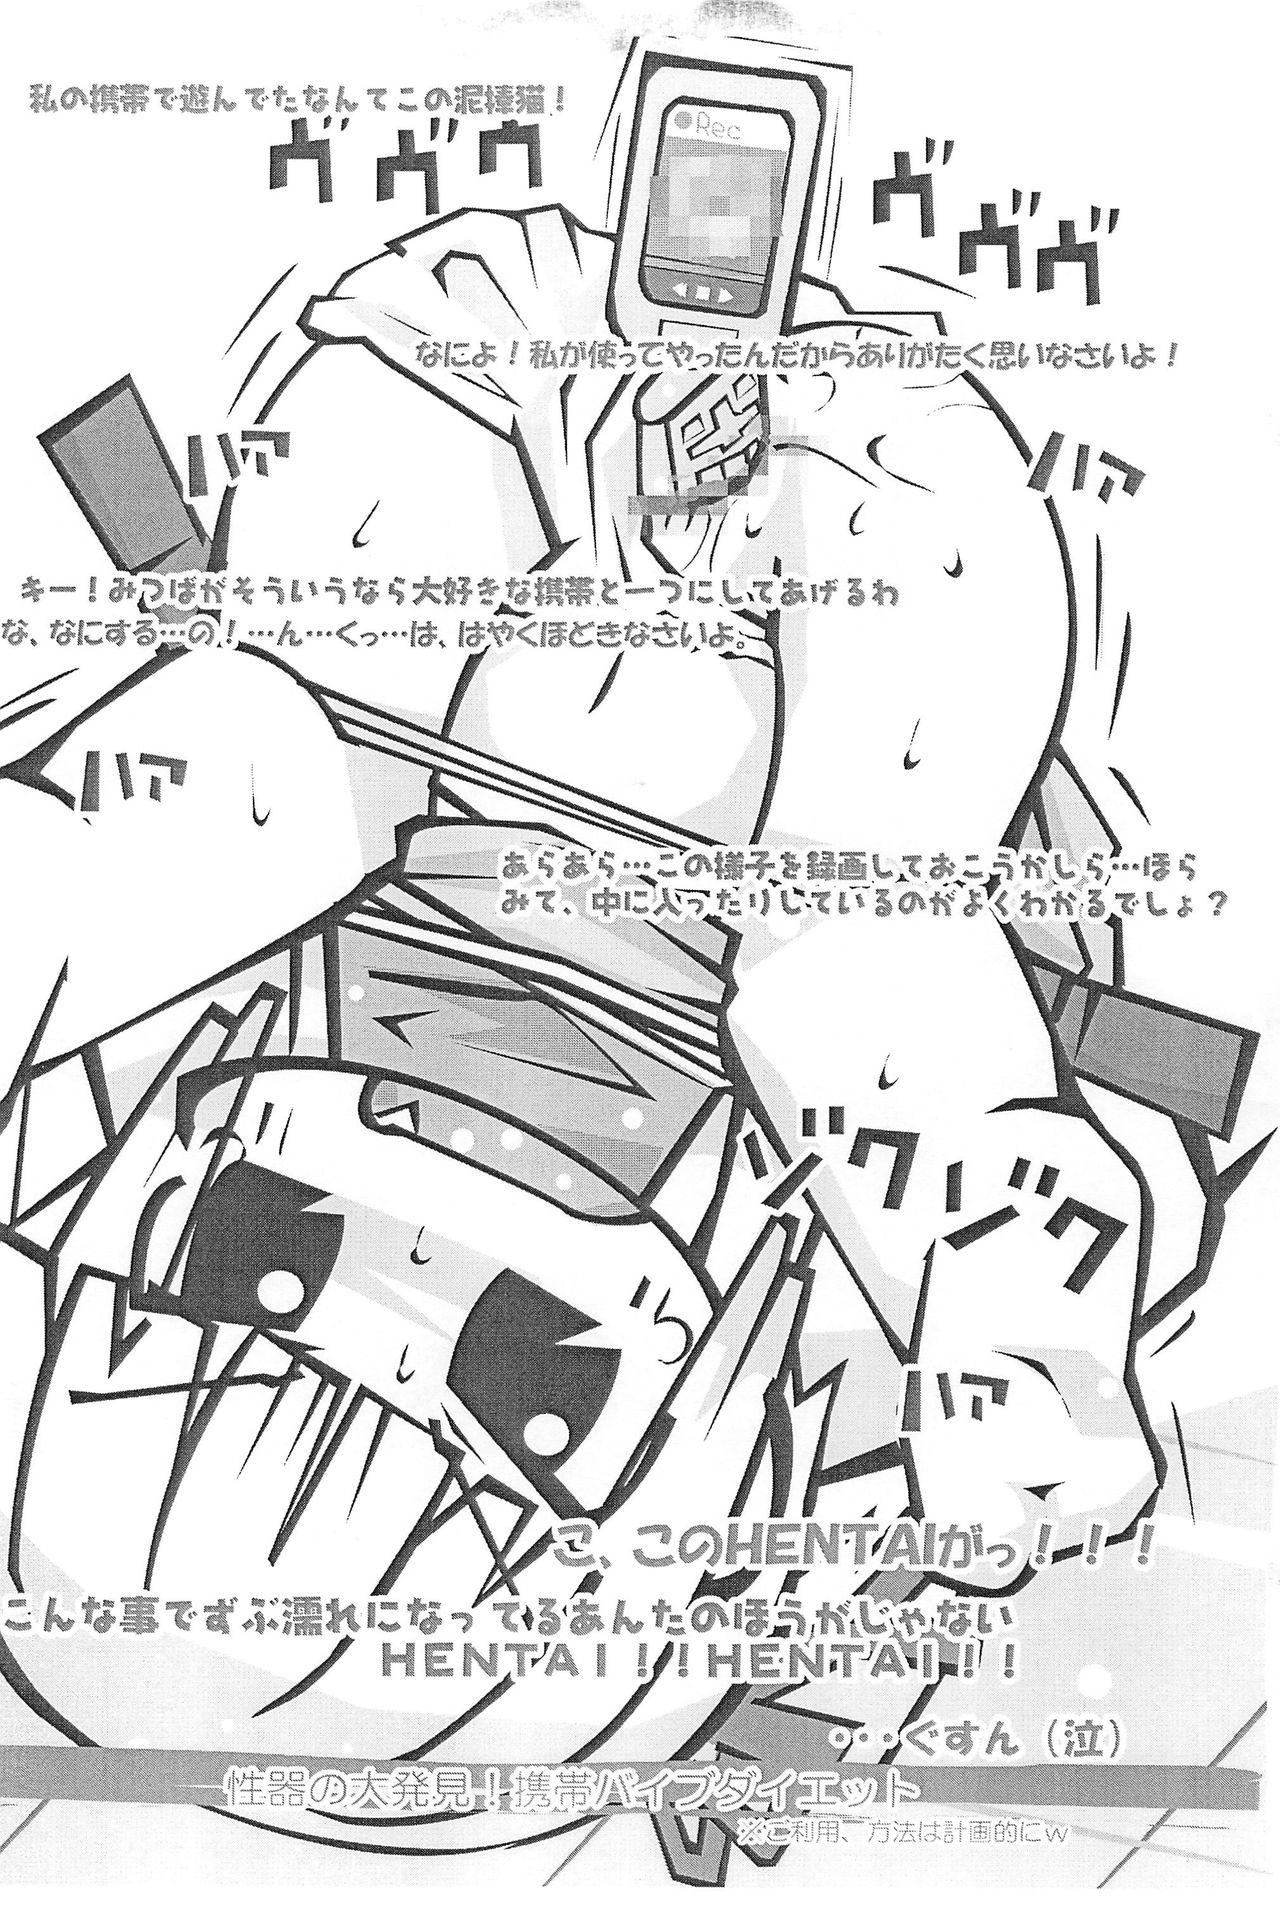 Chudai Honiki-Hentai 6 no 3 - Mitsudomoe Car - Page 9